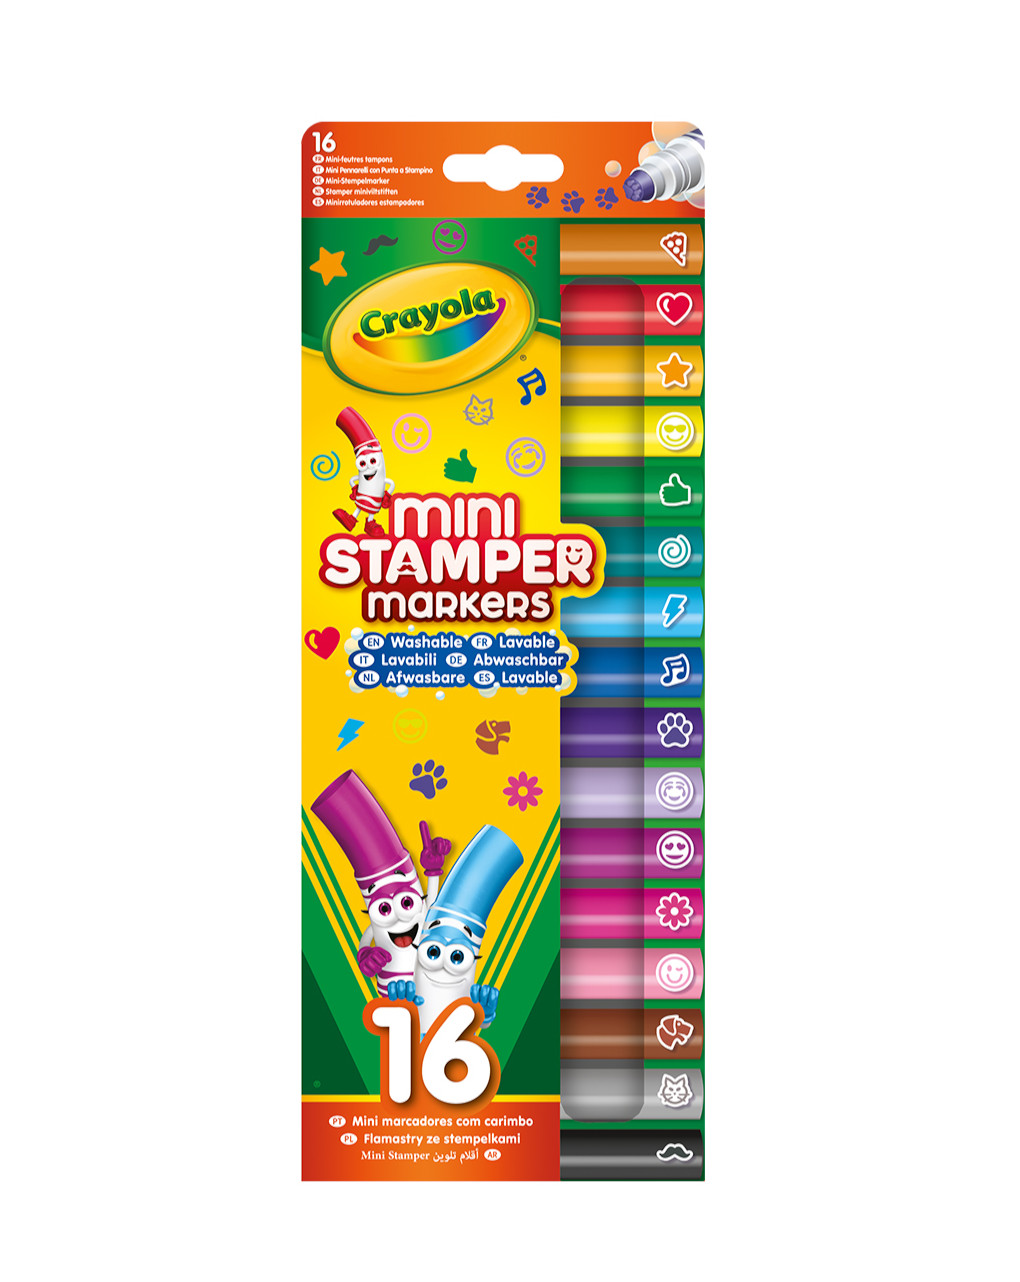 16 marcadores de stencil laváveis pip squeaks - crayola - Crayola